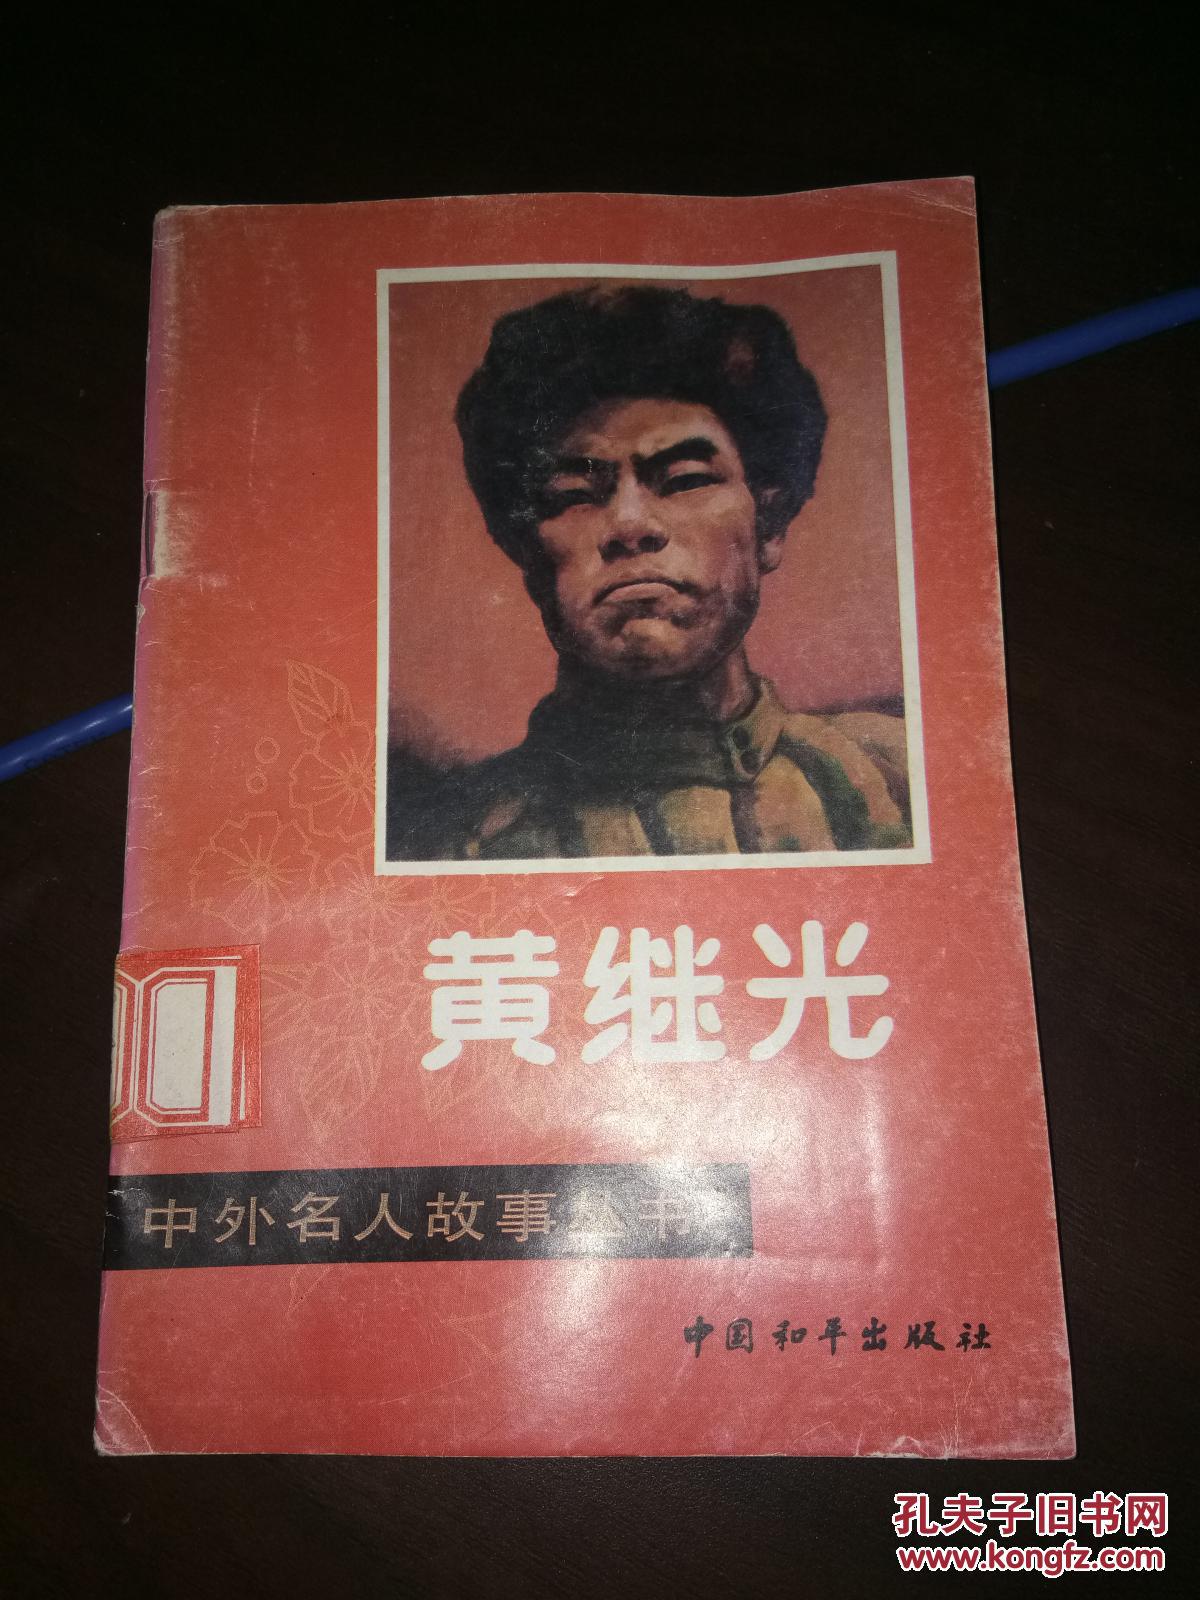 【图】黄继光中外名人故事丛书_中国和平出版